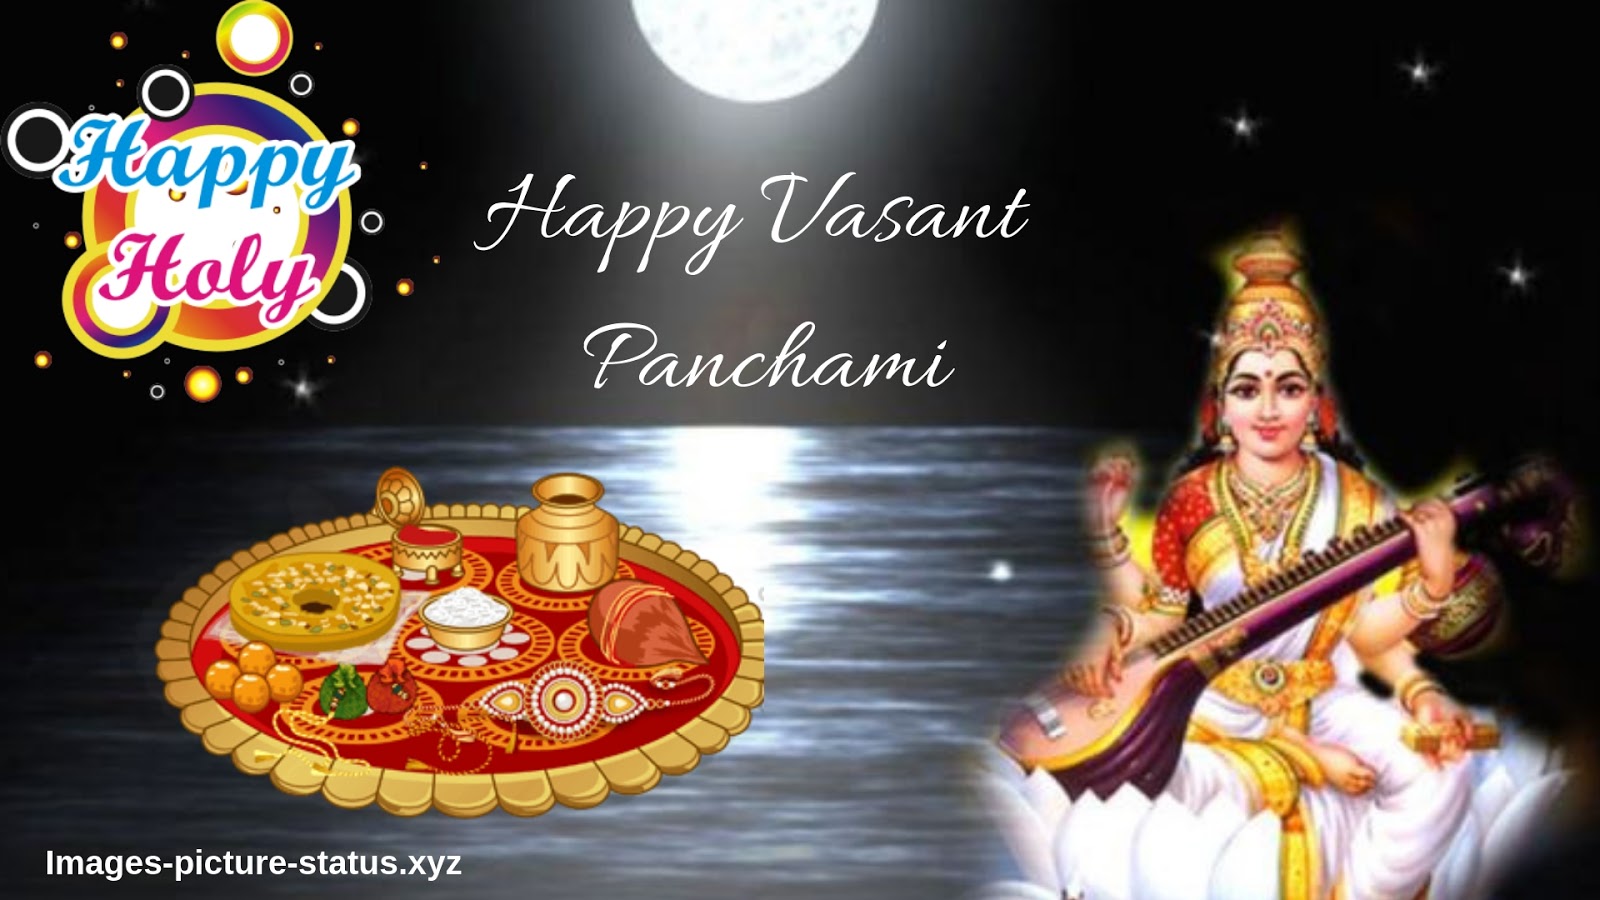 Vasant Panchami Wishes Images, Basant Panchami Images - Ayudha Pooja And Saraswati Puja 2018 , HD Wallpaper & Backgrounds